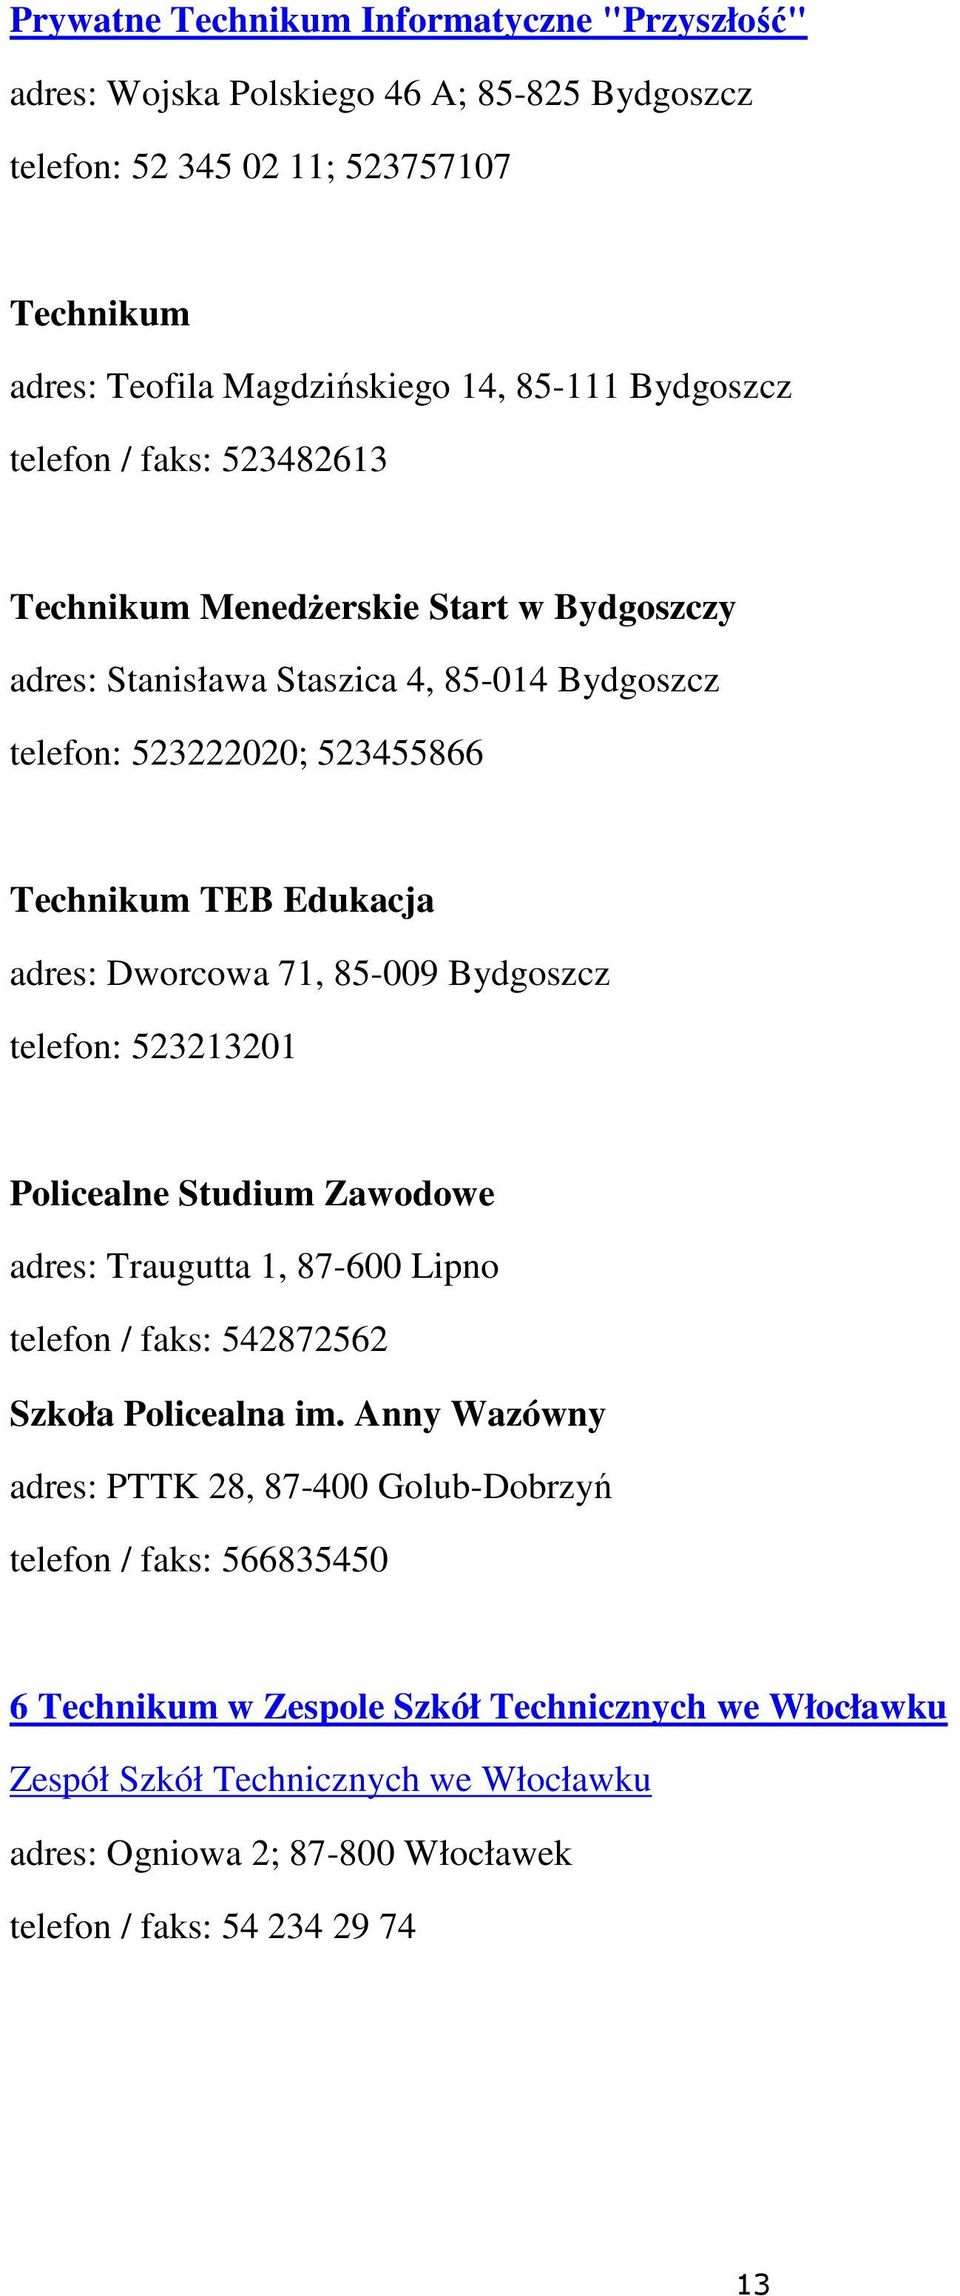 85-009 Bydgoszcz telefon: 523213201 Policealne Studium Zawodowe adres: Traugutta 1, 87-600 Lipno telefon / faks: 542872562 Szkoła Policealna im.